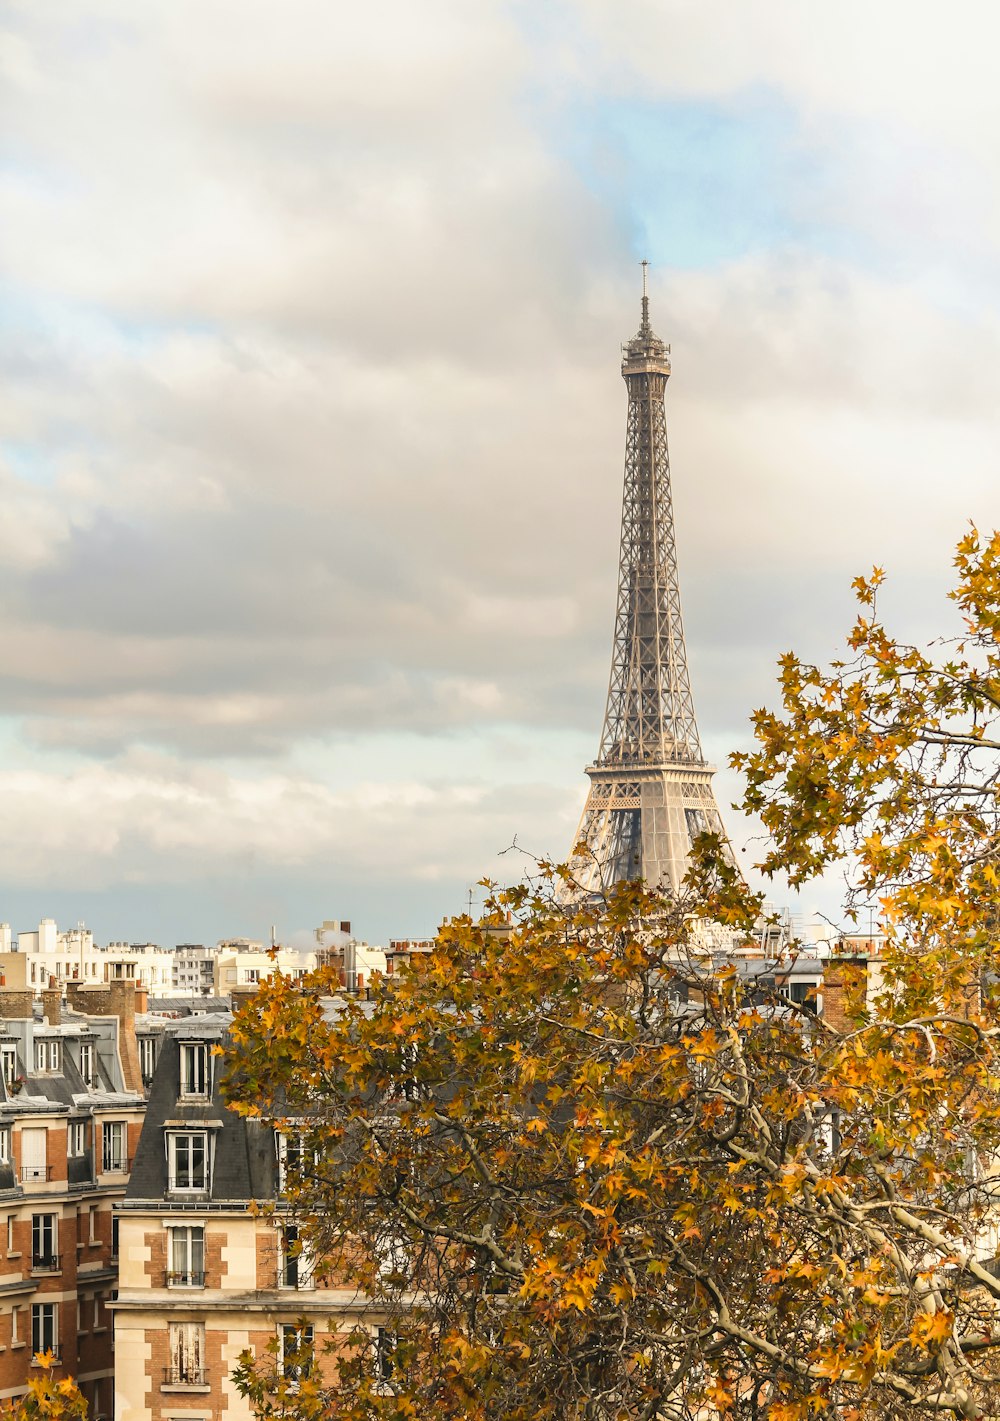 La Torre Eiffel che domina la città di Parigi